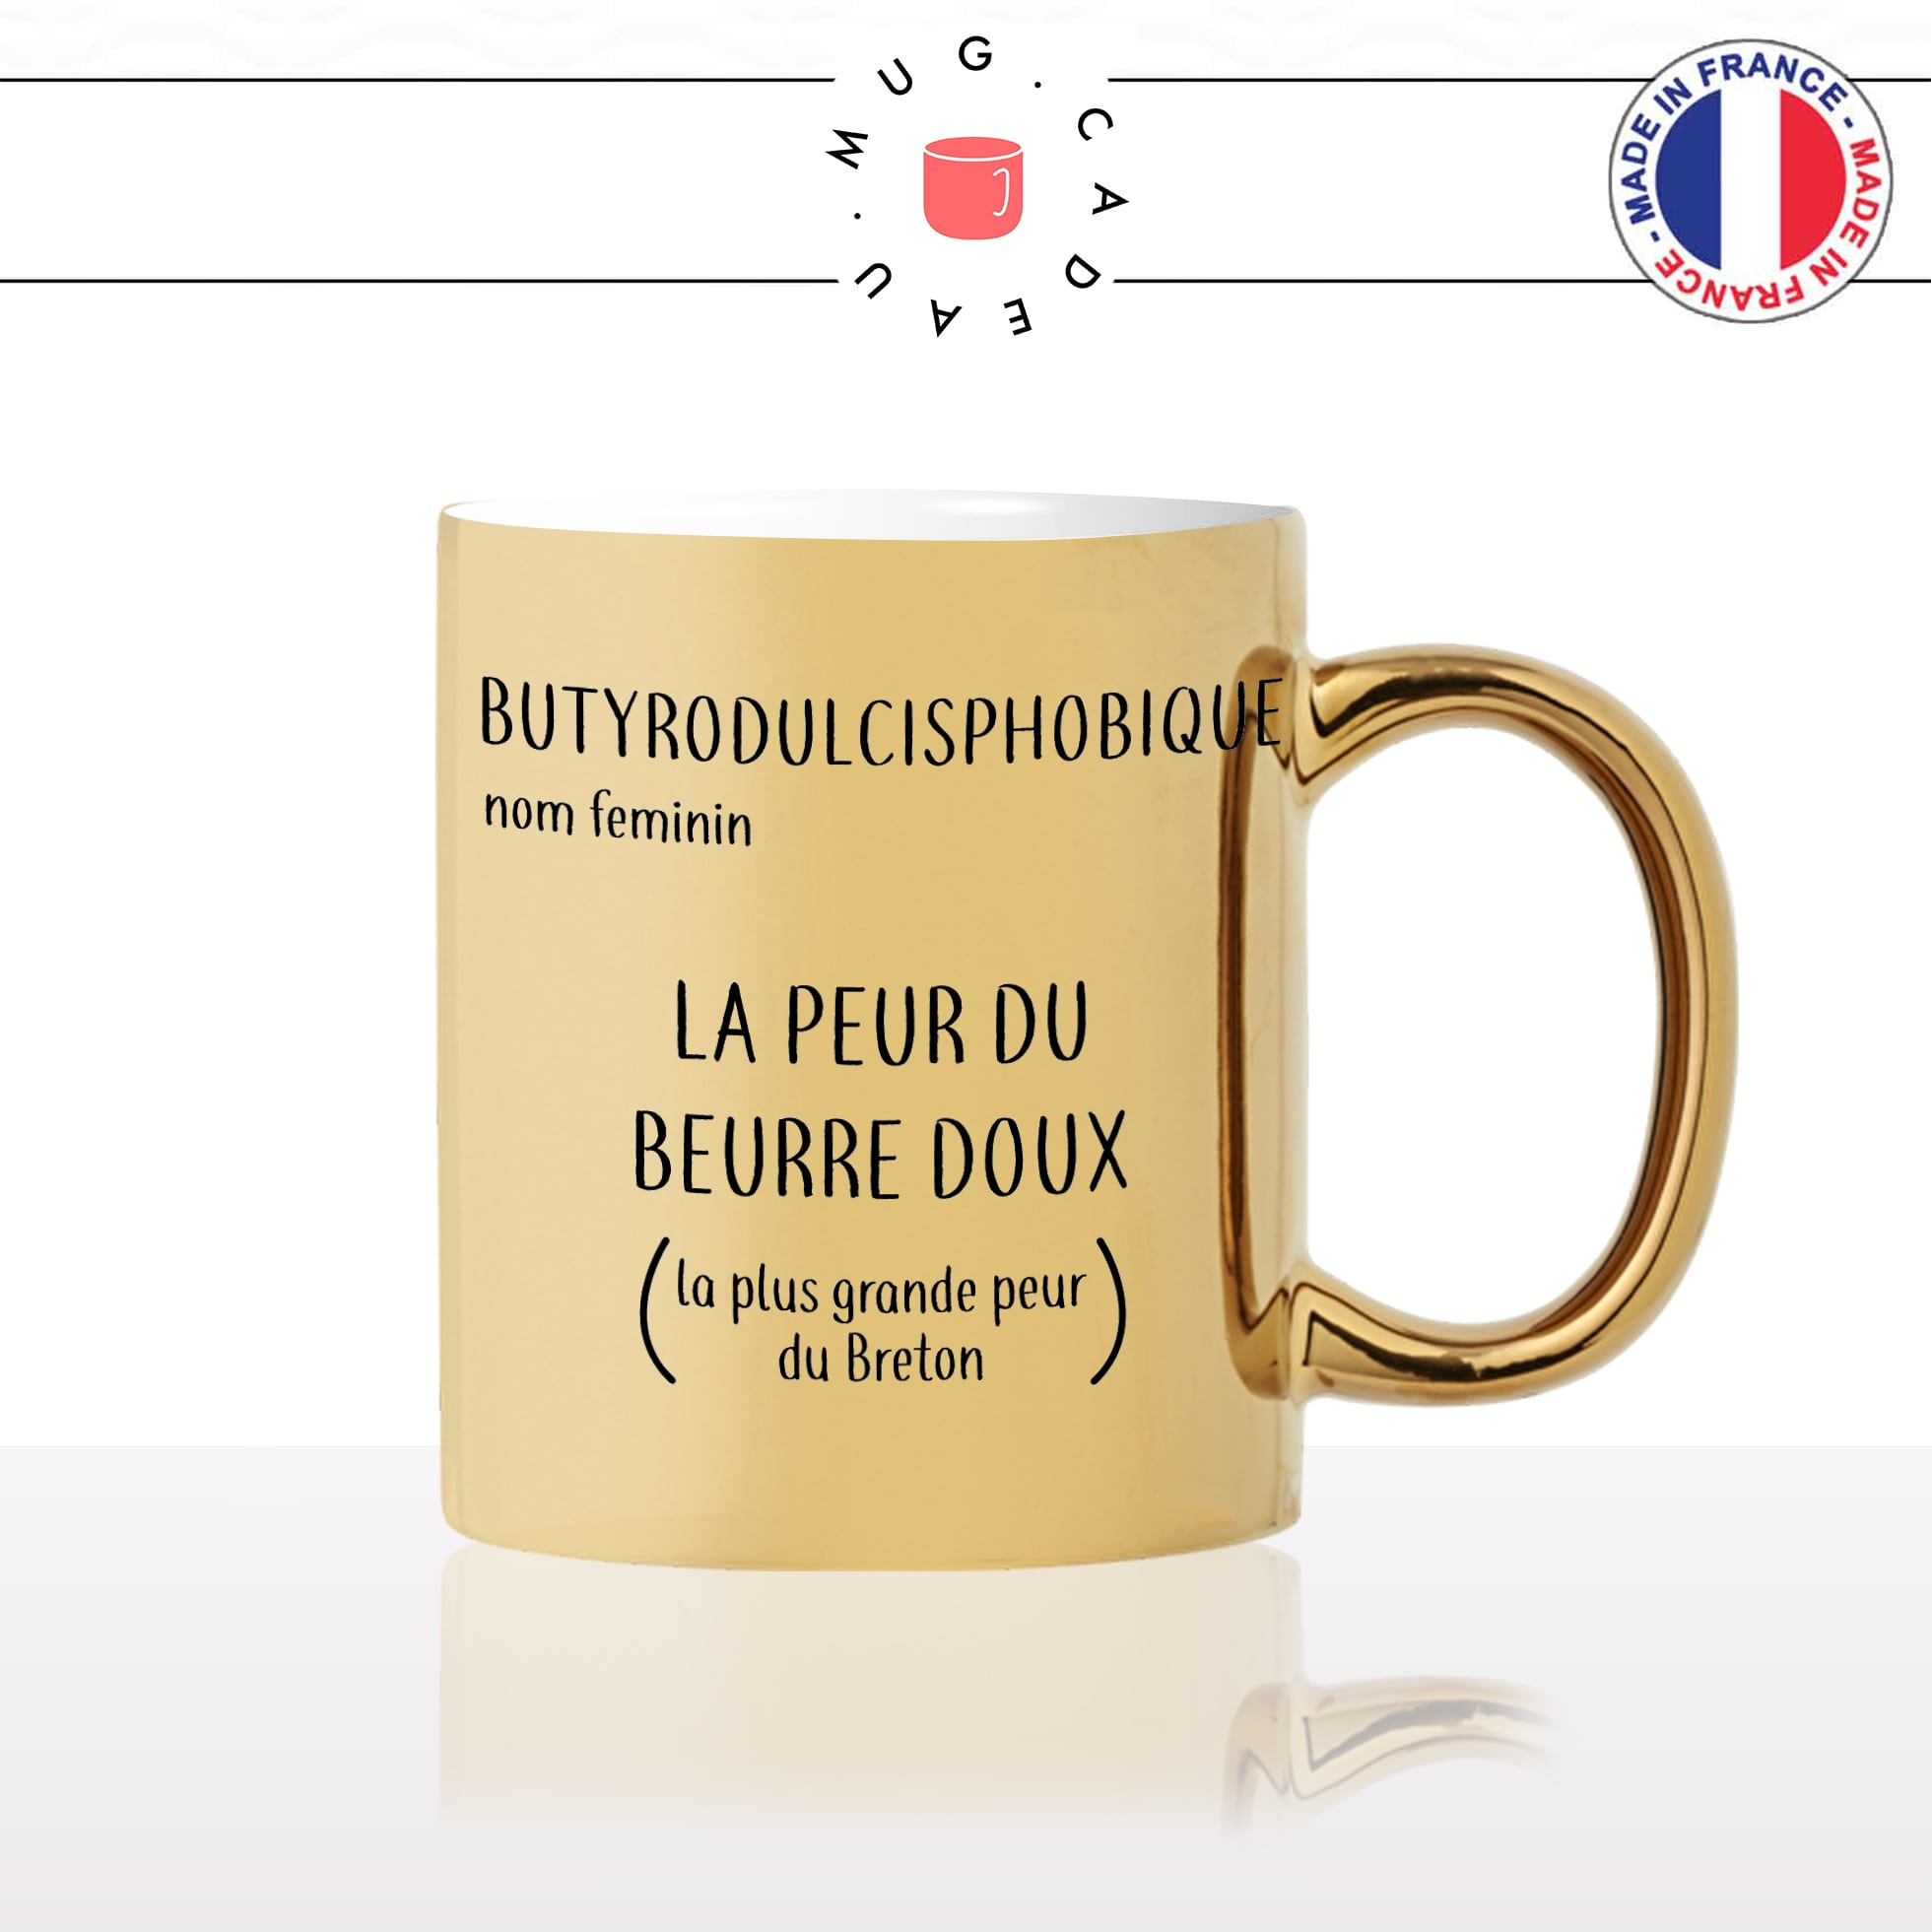 mug-tasse-or-gold-doré-la-peur-du-beurre-doux-phobie-breton-definition-bretagne-beurre-salé-fun-idée-cadeau-original-personnalisé-café-thé2-min